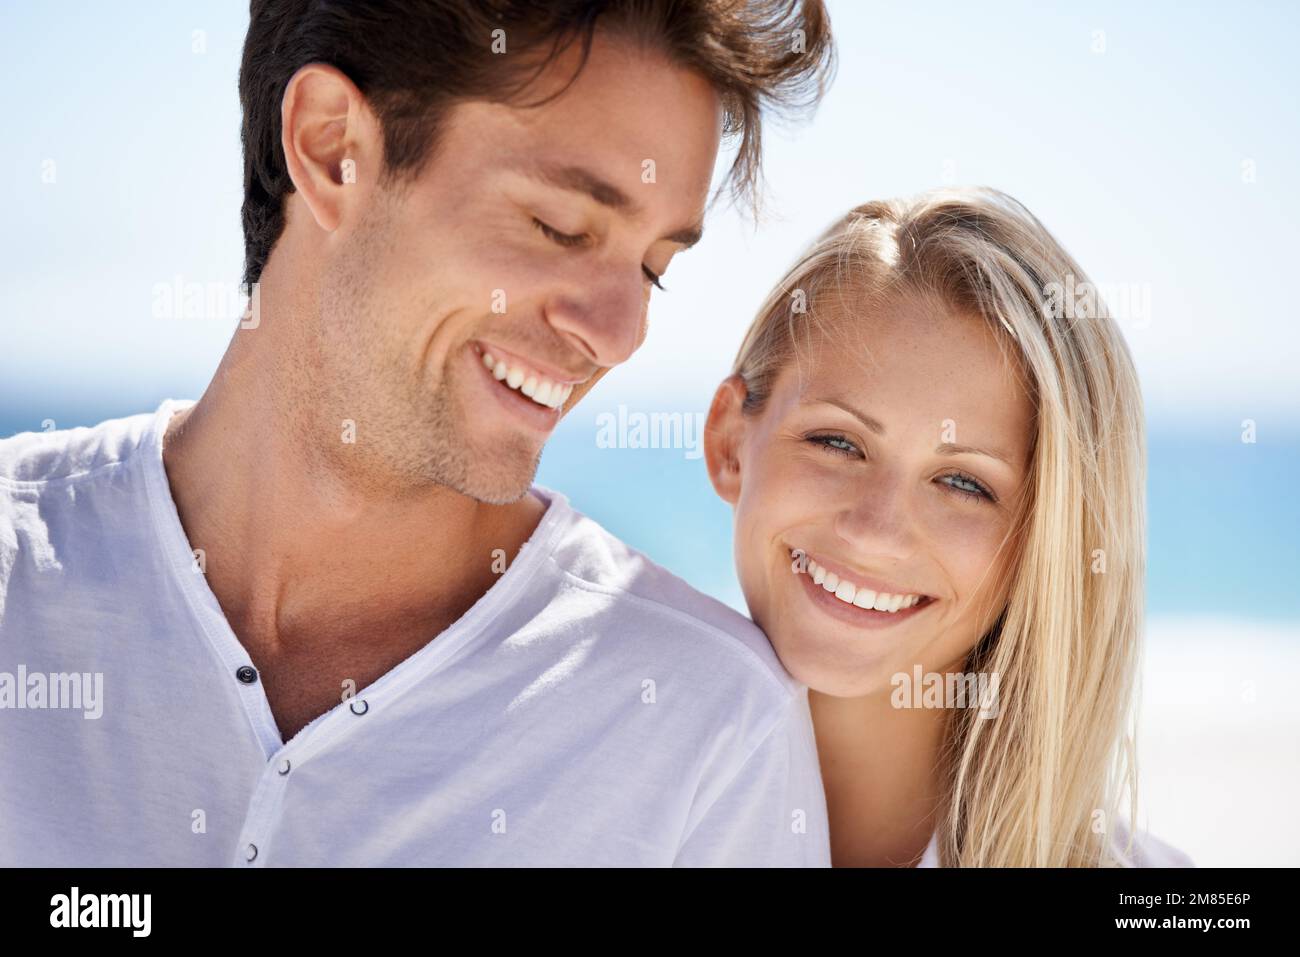 Genießen Sie einen romantischen Kurzurlaub. Ein junges Paar, das einen intimen Moment am Strand hat. Stockfoto